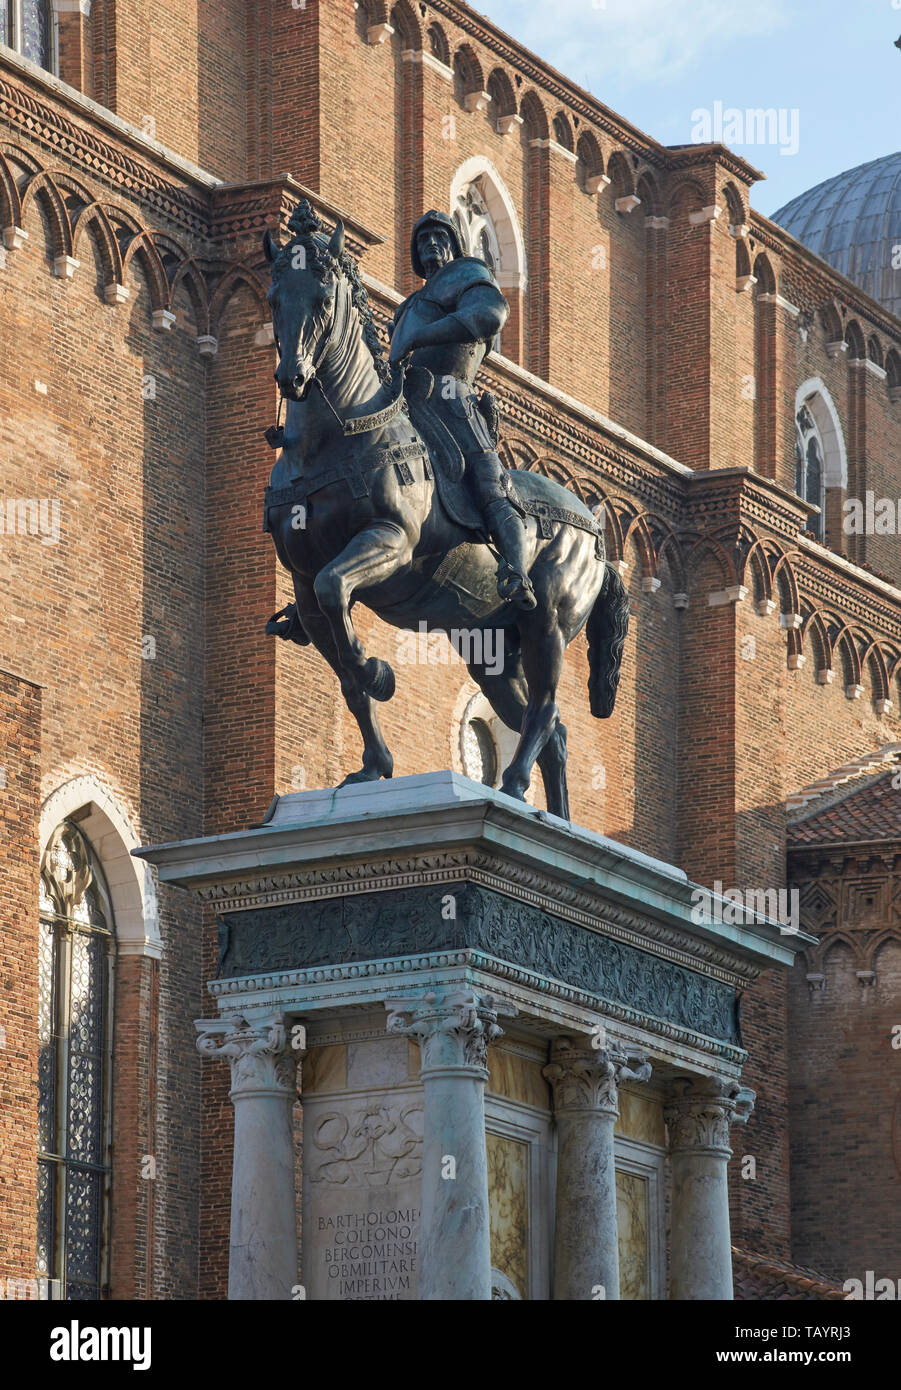 Bartolomeo Colleoni, par Verrocchio. En face du Campo SS Giovanni e Paolo de Venise. Commencé par Verrocchio en 1481, achevé et exprimés par Leopardi 1488 Banque D'Images